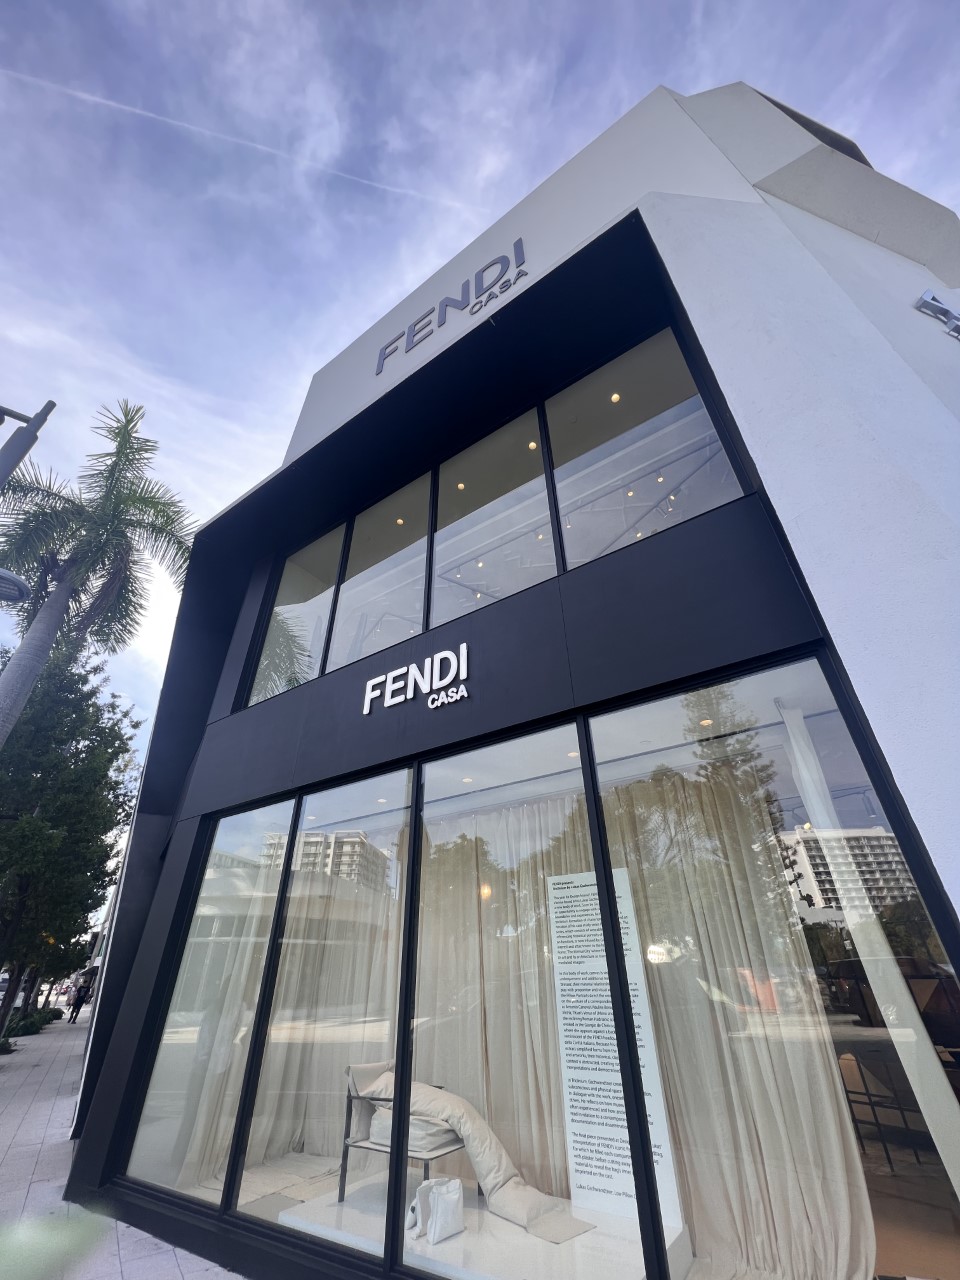 Fendi on X: The new #Fendi boutique located in the Miami Design